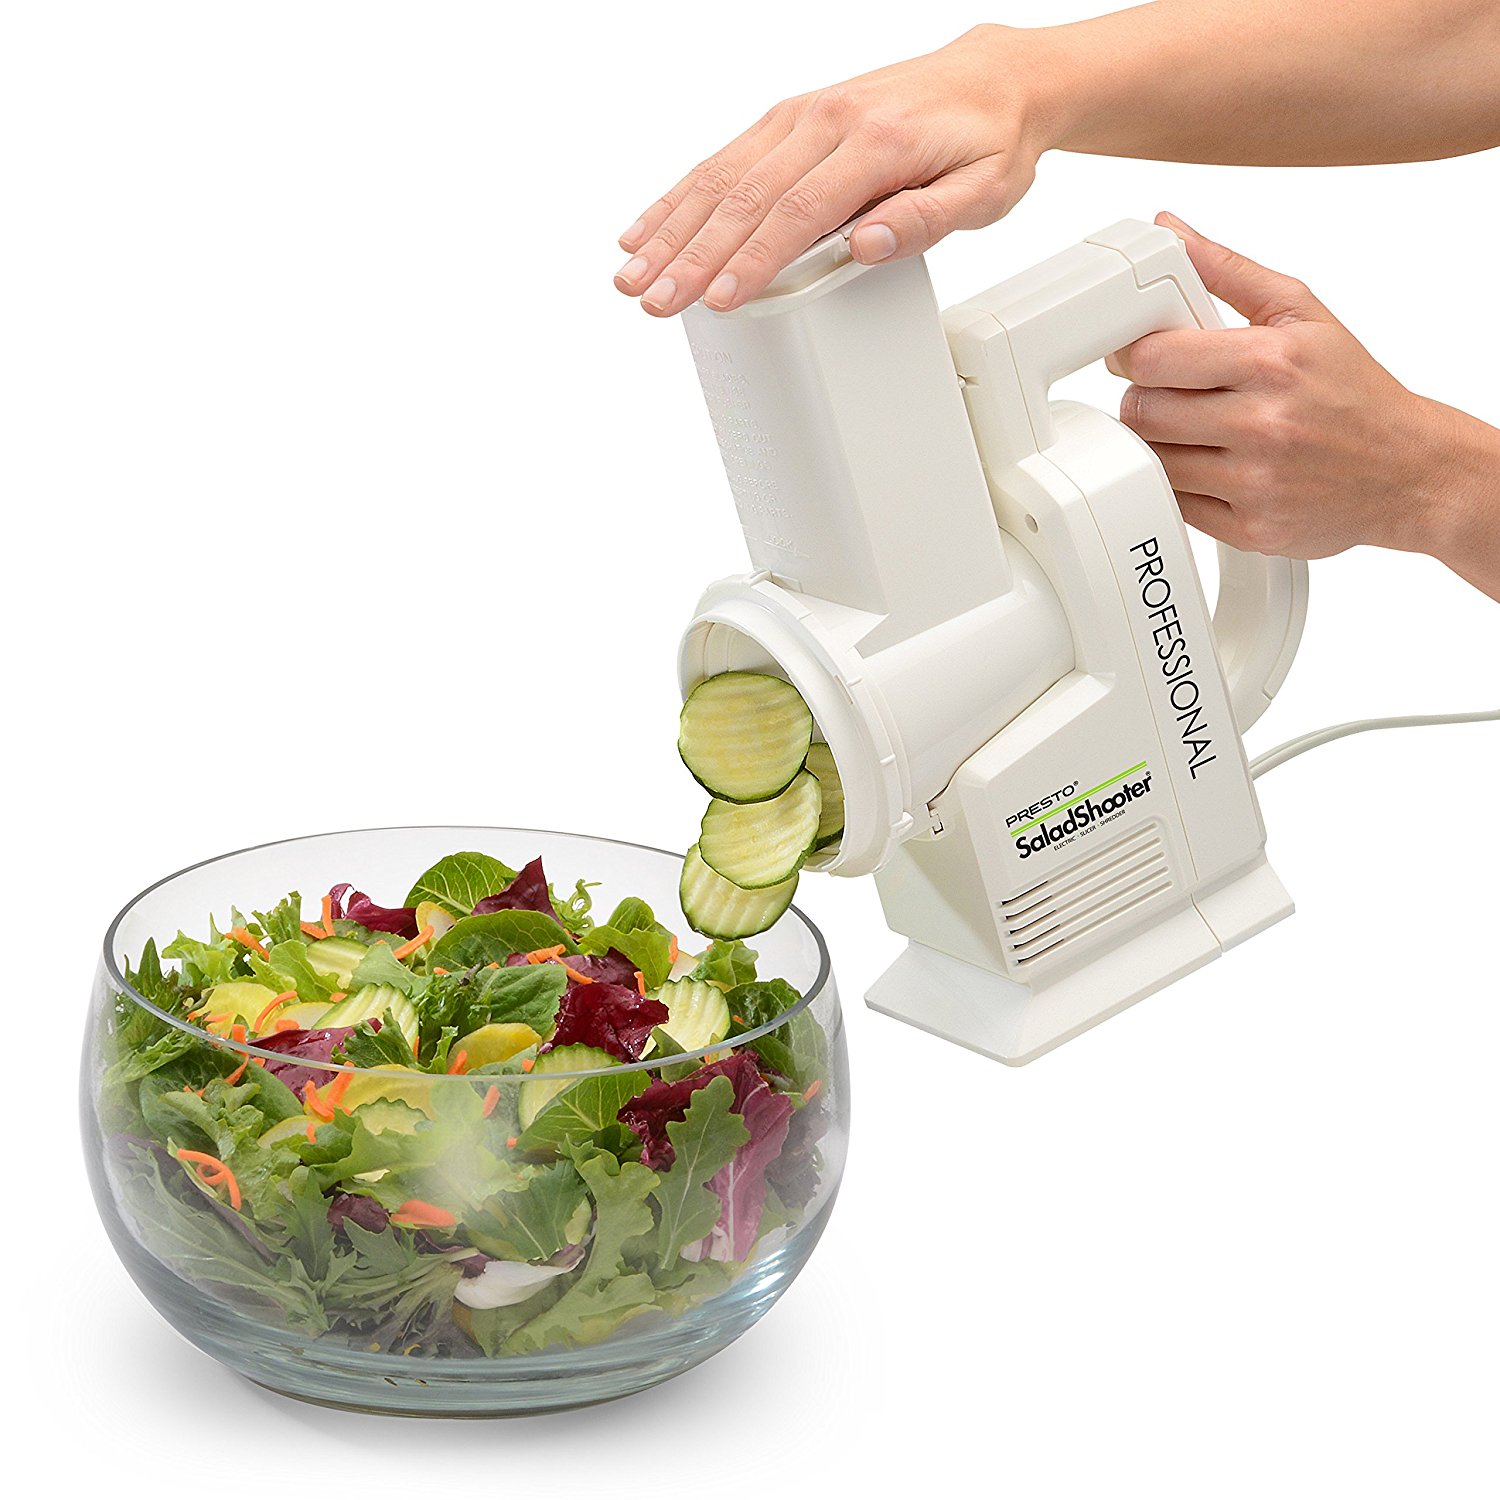 Presto Professional SaladShooter Electric Slicer/Shredder – Just $47.98!